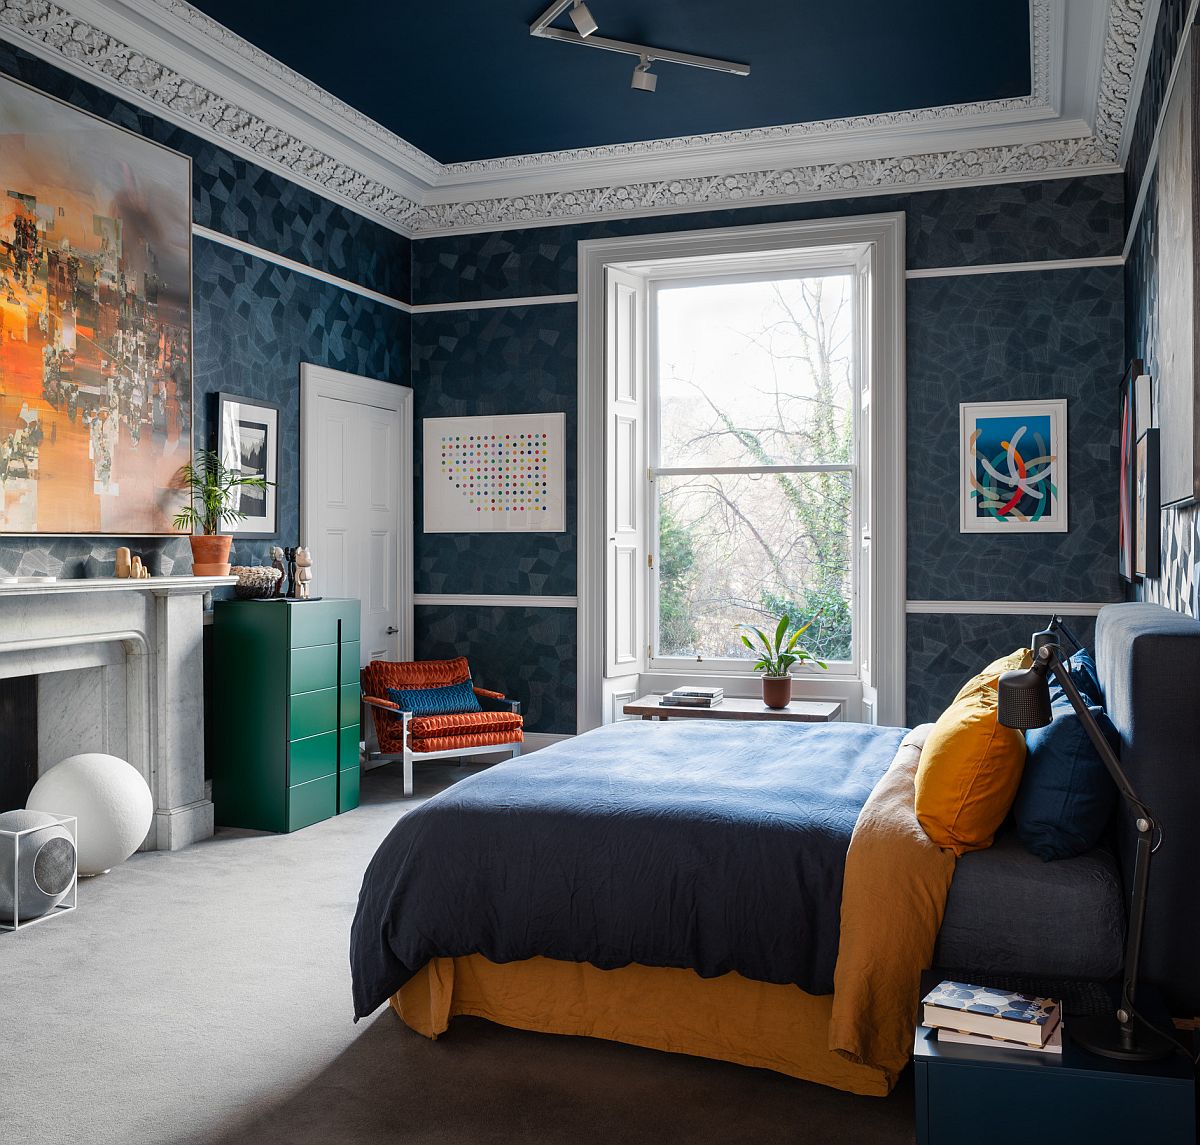 hình ảnh mẫu phòng ngủ con trai tuổi teen thoáng sáng, tông màu xanh nước biển đậm